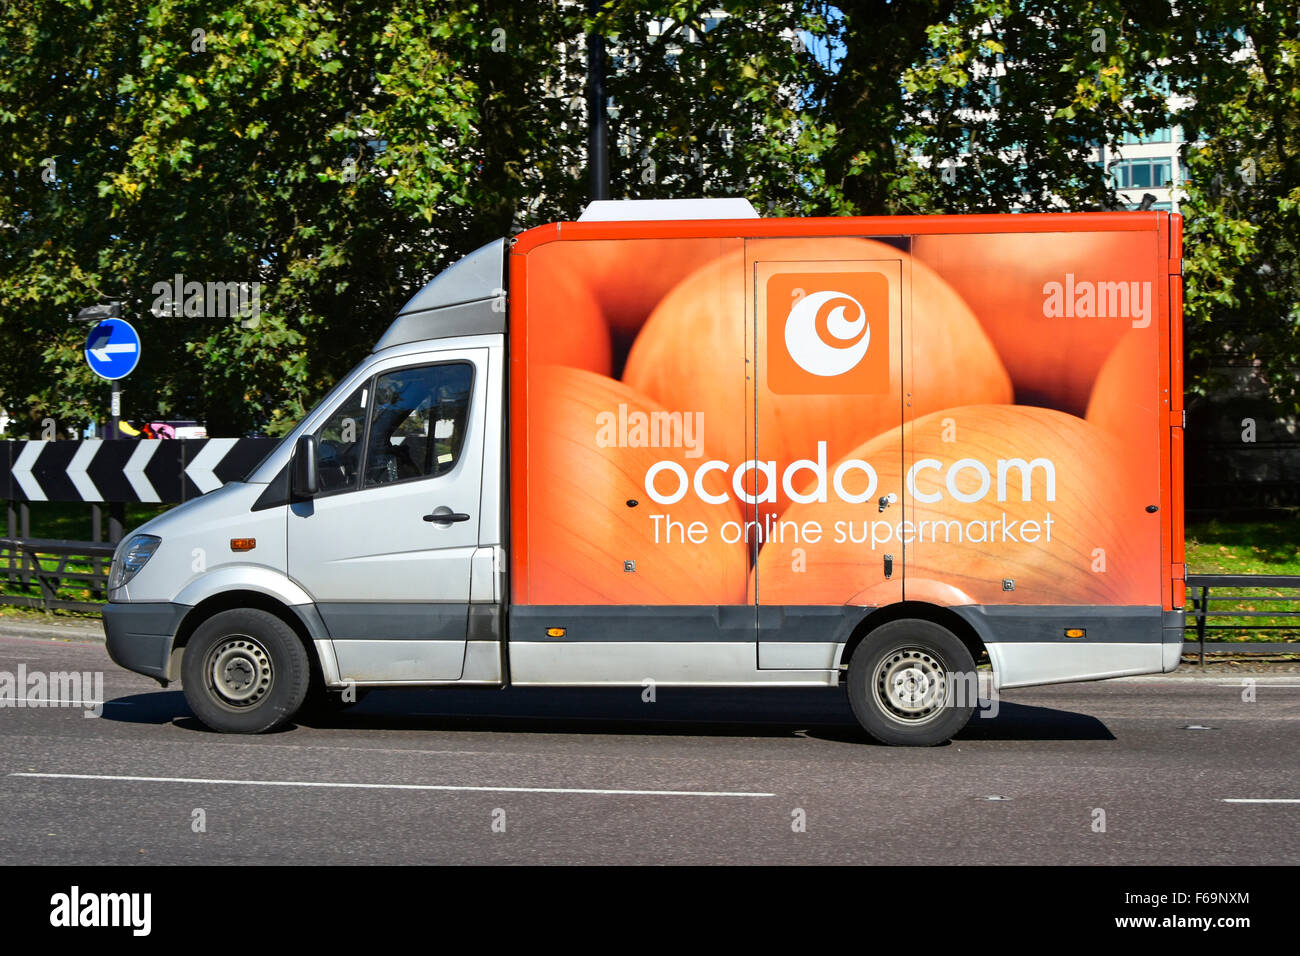 Ocado livraison van vue latérale de l'Internet alimentaire épicerie supermarché livraison camion conduite le long de Park Lane Londres Angleterre Royaume-Uni Banque D'Images